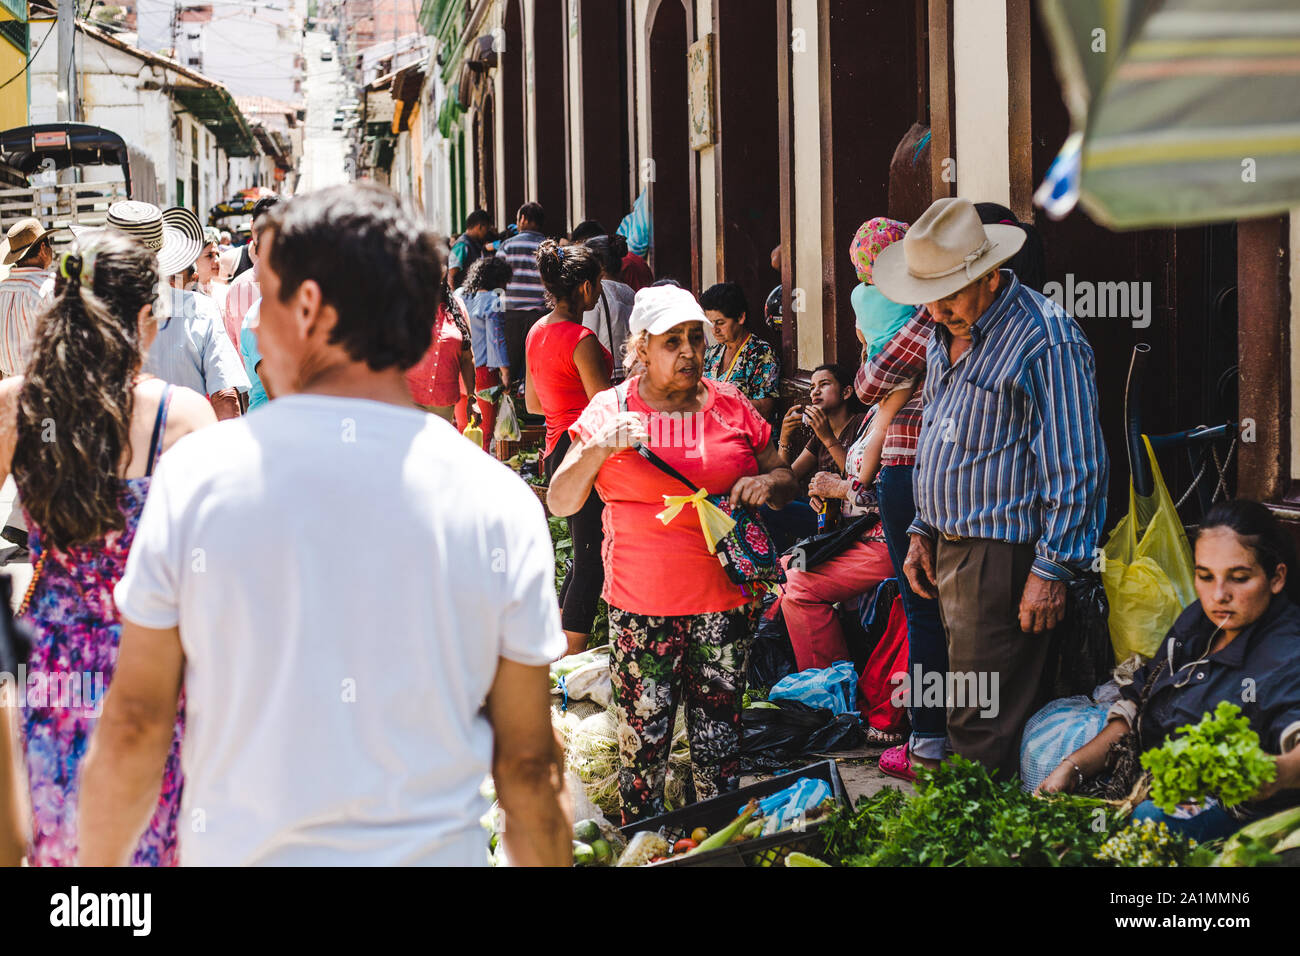 Tipica scena presso il locale mercato di frutta e verdura in Colombia, dove gli agricoltori venuti alla città di San Gil, Santander per vendere i loro prodotti biologici Foto Stock